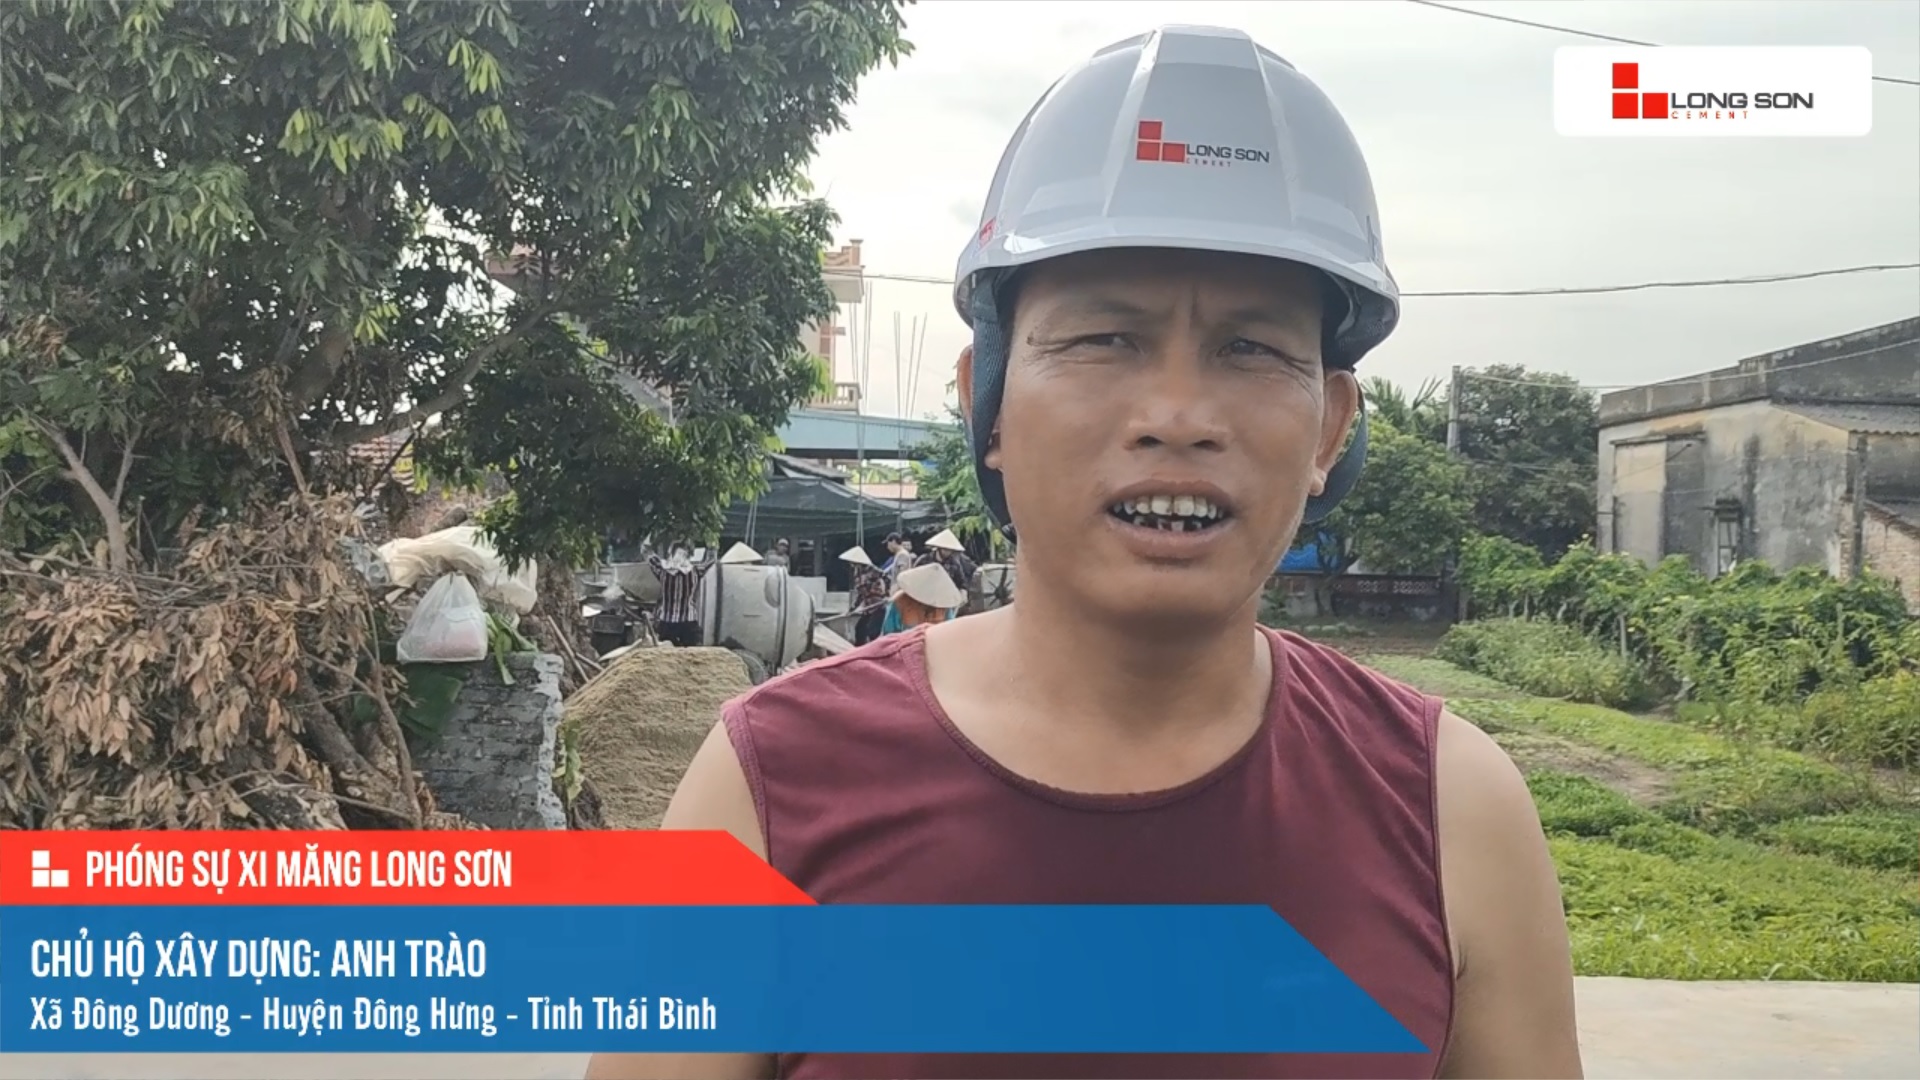 Phóng sự công trình sử dụng xi măng Long Sơn tại Thái Bình ngày 18/07/2021